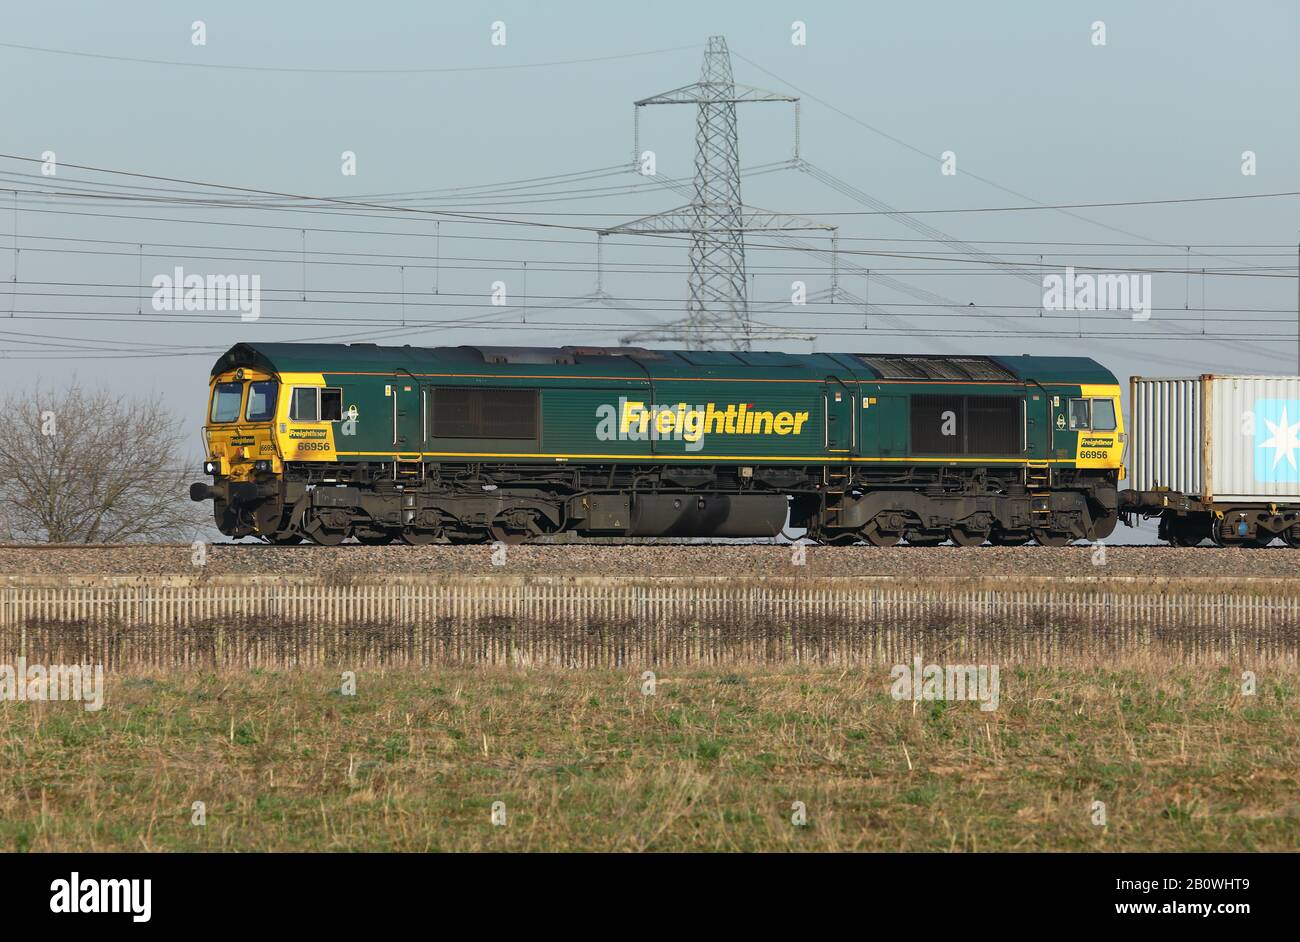 Locomotiva per ferrovia diesel-elettrica di classe 66, gestita in Gran Bretagna dall'azienda Freightliner. Foto Stock